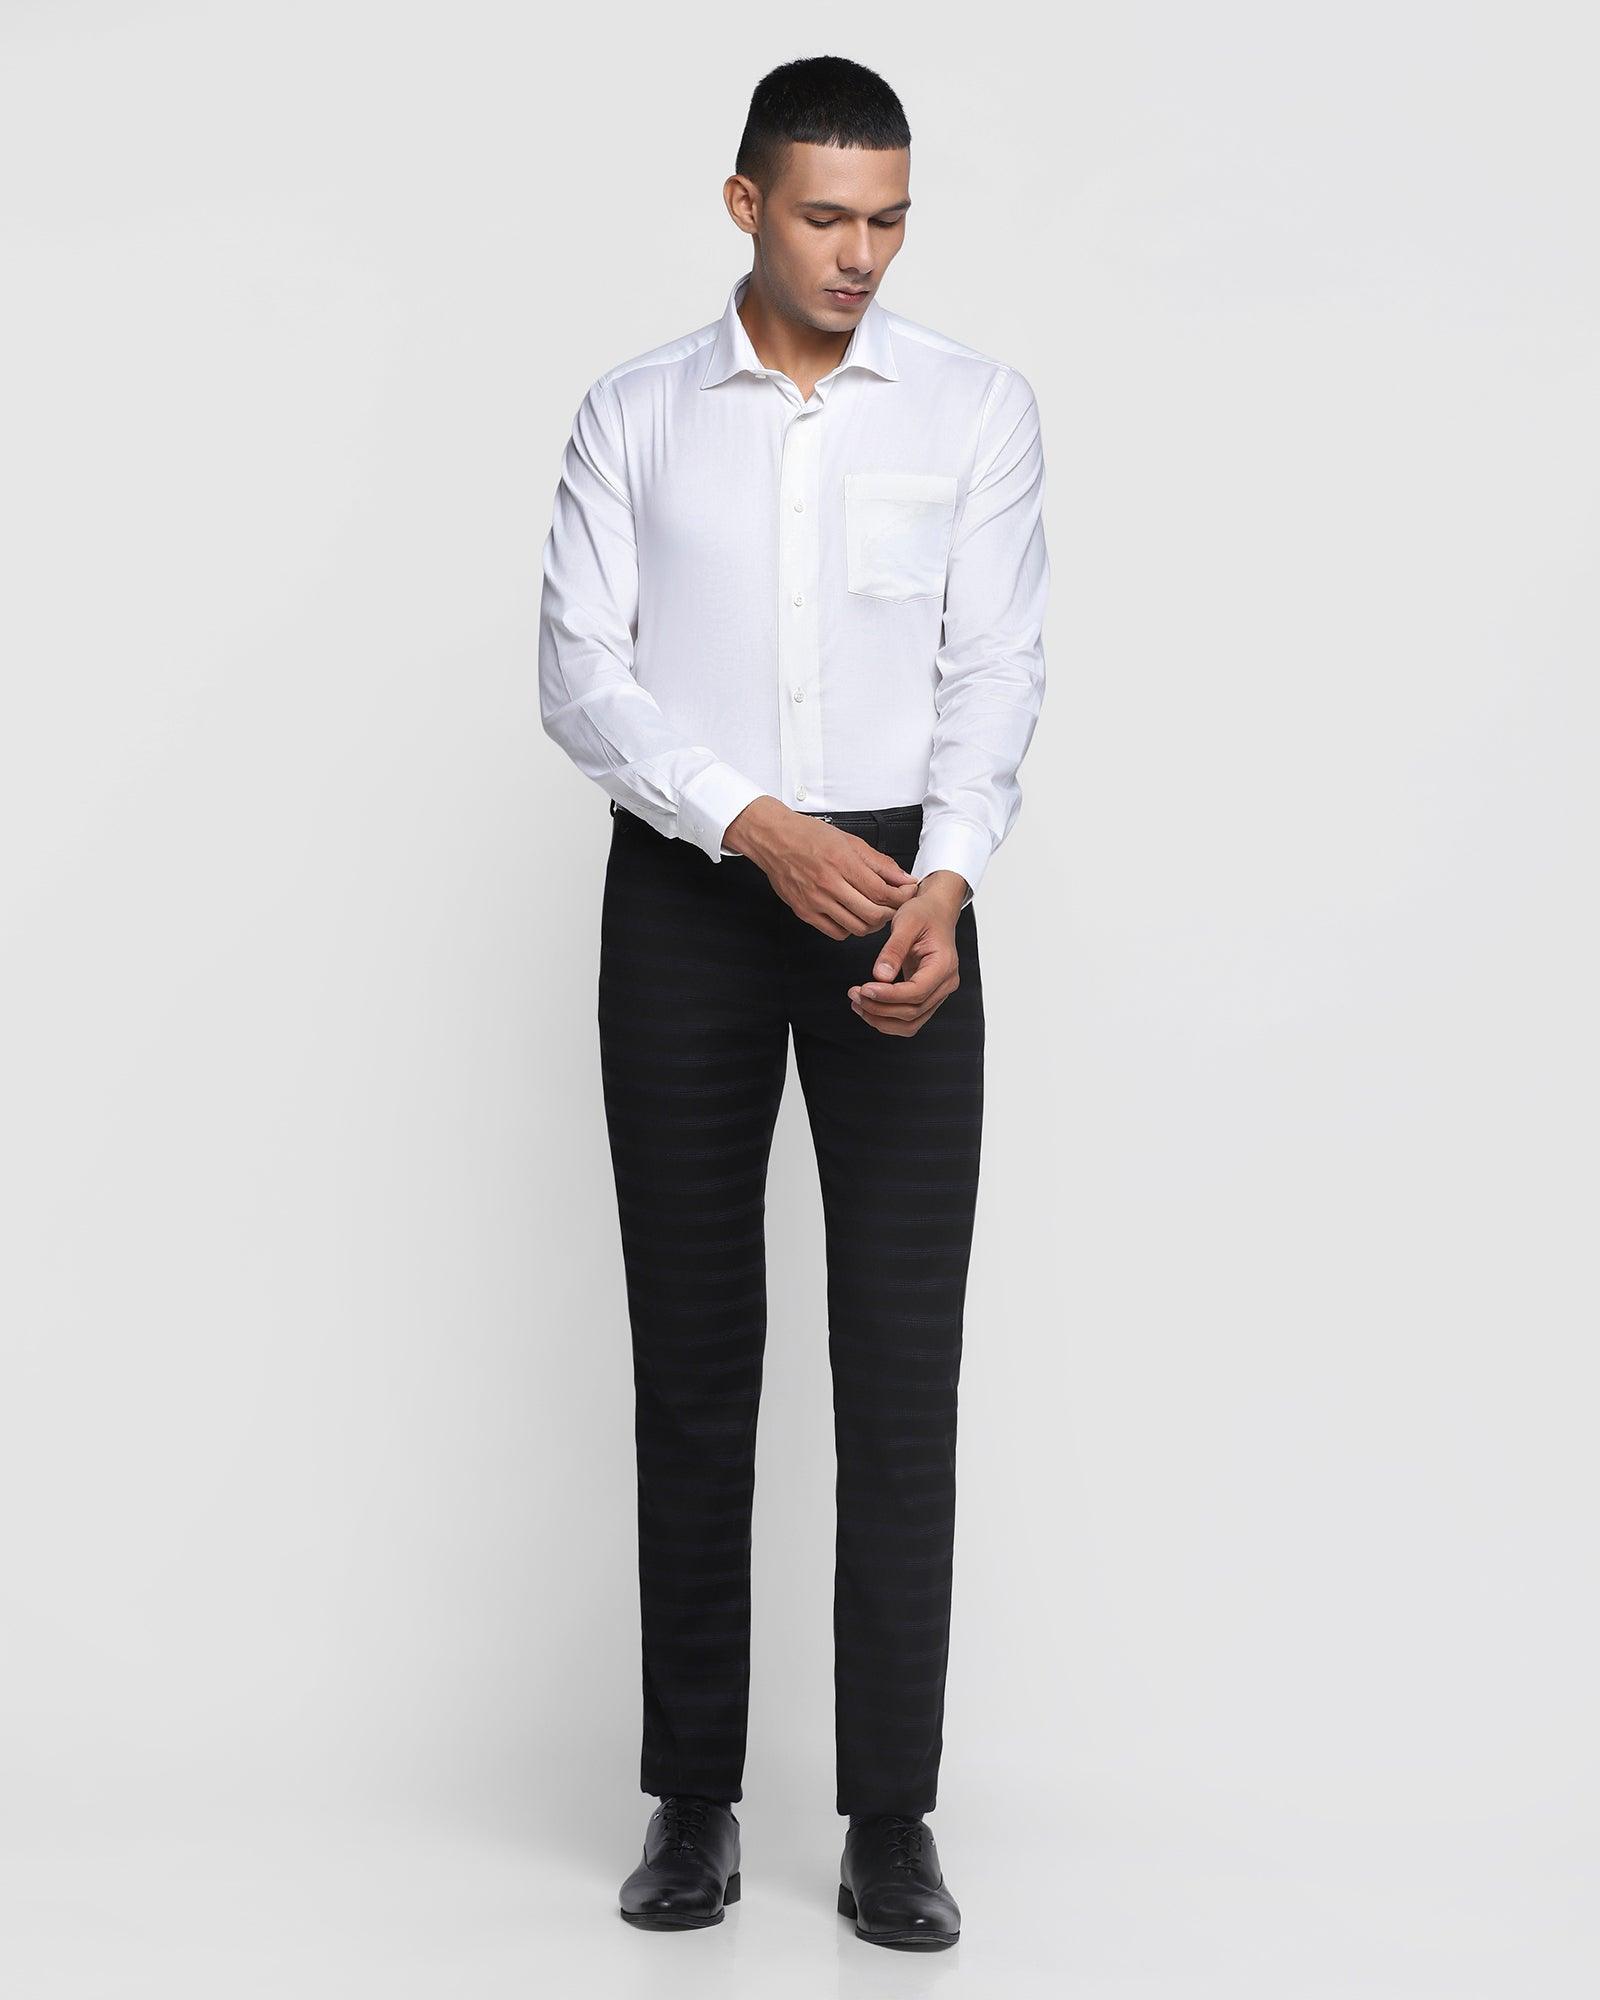 Men's Unique Striped Formal Pants Plain Pants Business Pants Slim Fit Flat  Front Trousers - Walmart.com